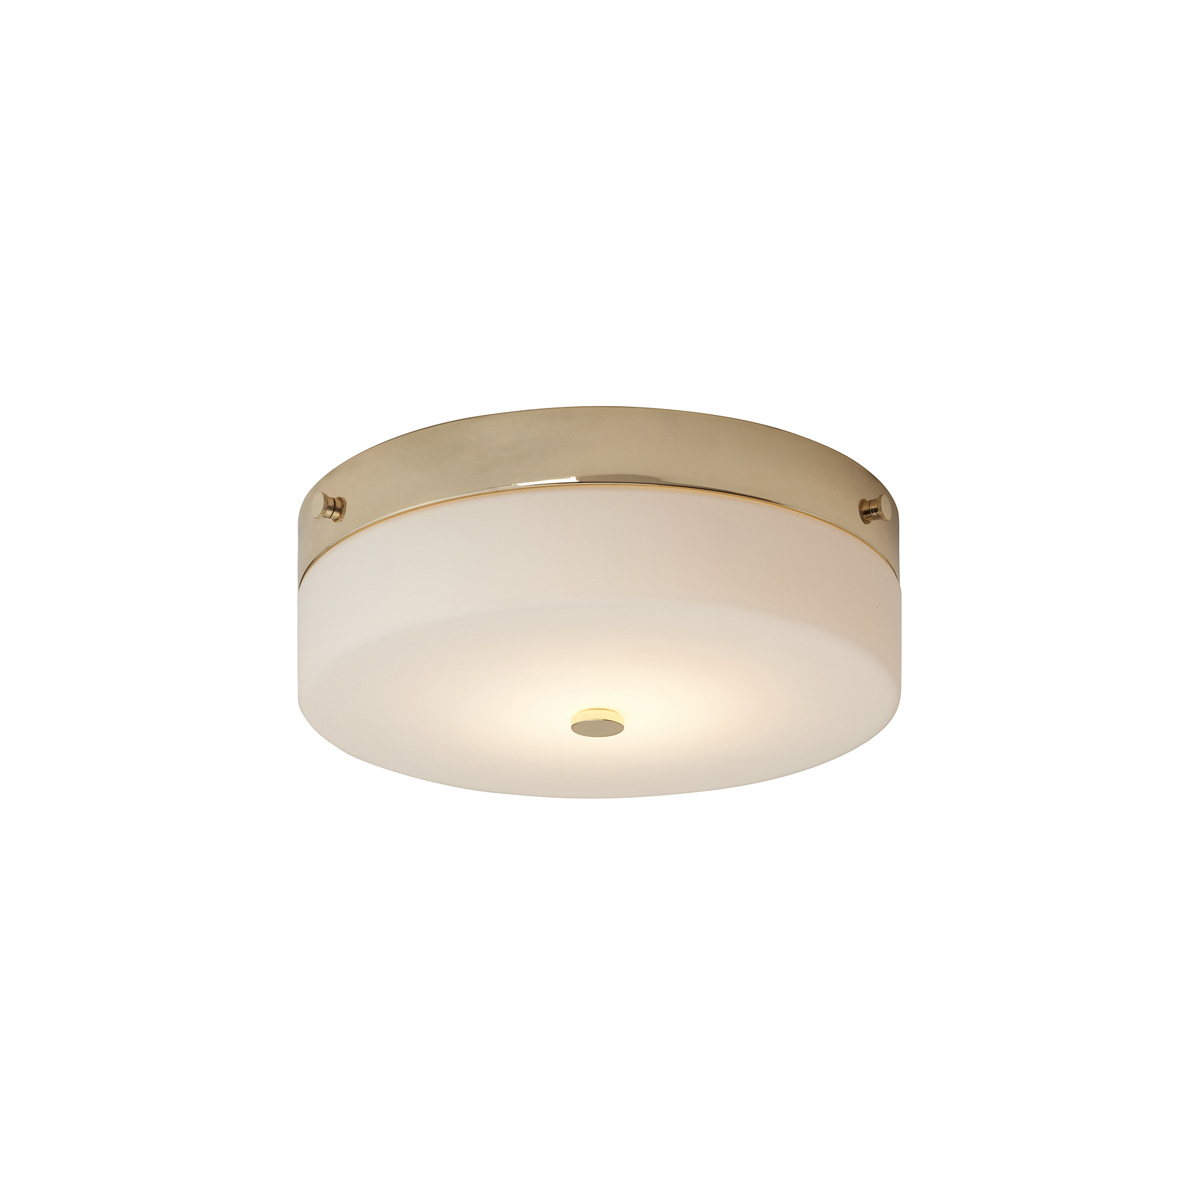 Потолочный светильник для ванных комнат TAMAR-F-L-PG, Потолочные светильники для ванных комнат | Металл/Стекло | Золото.